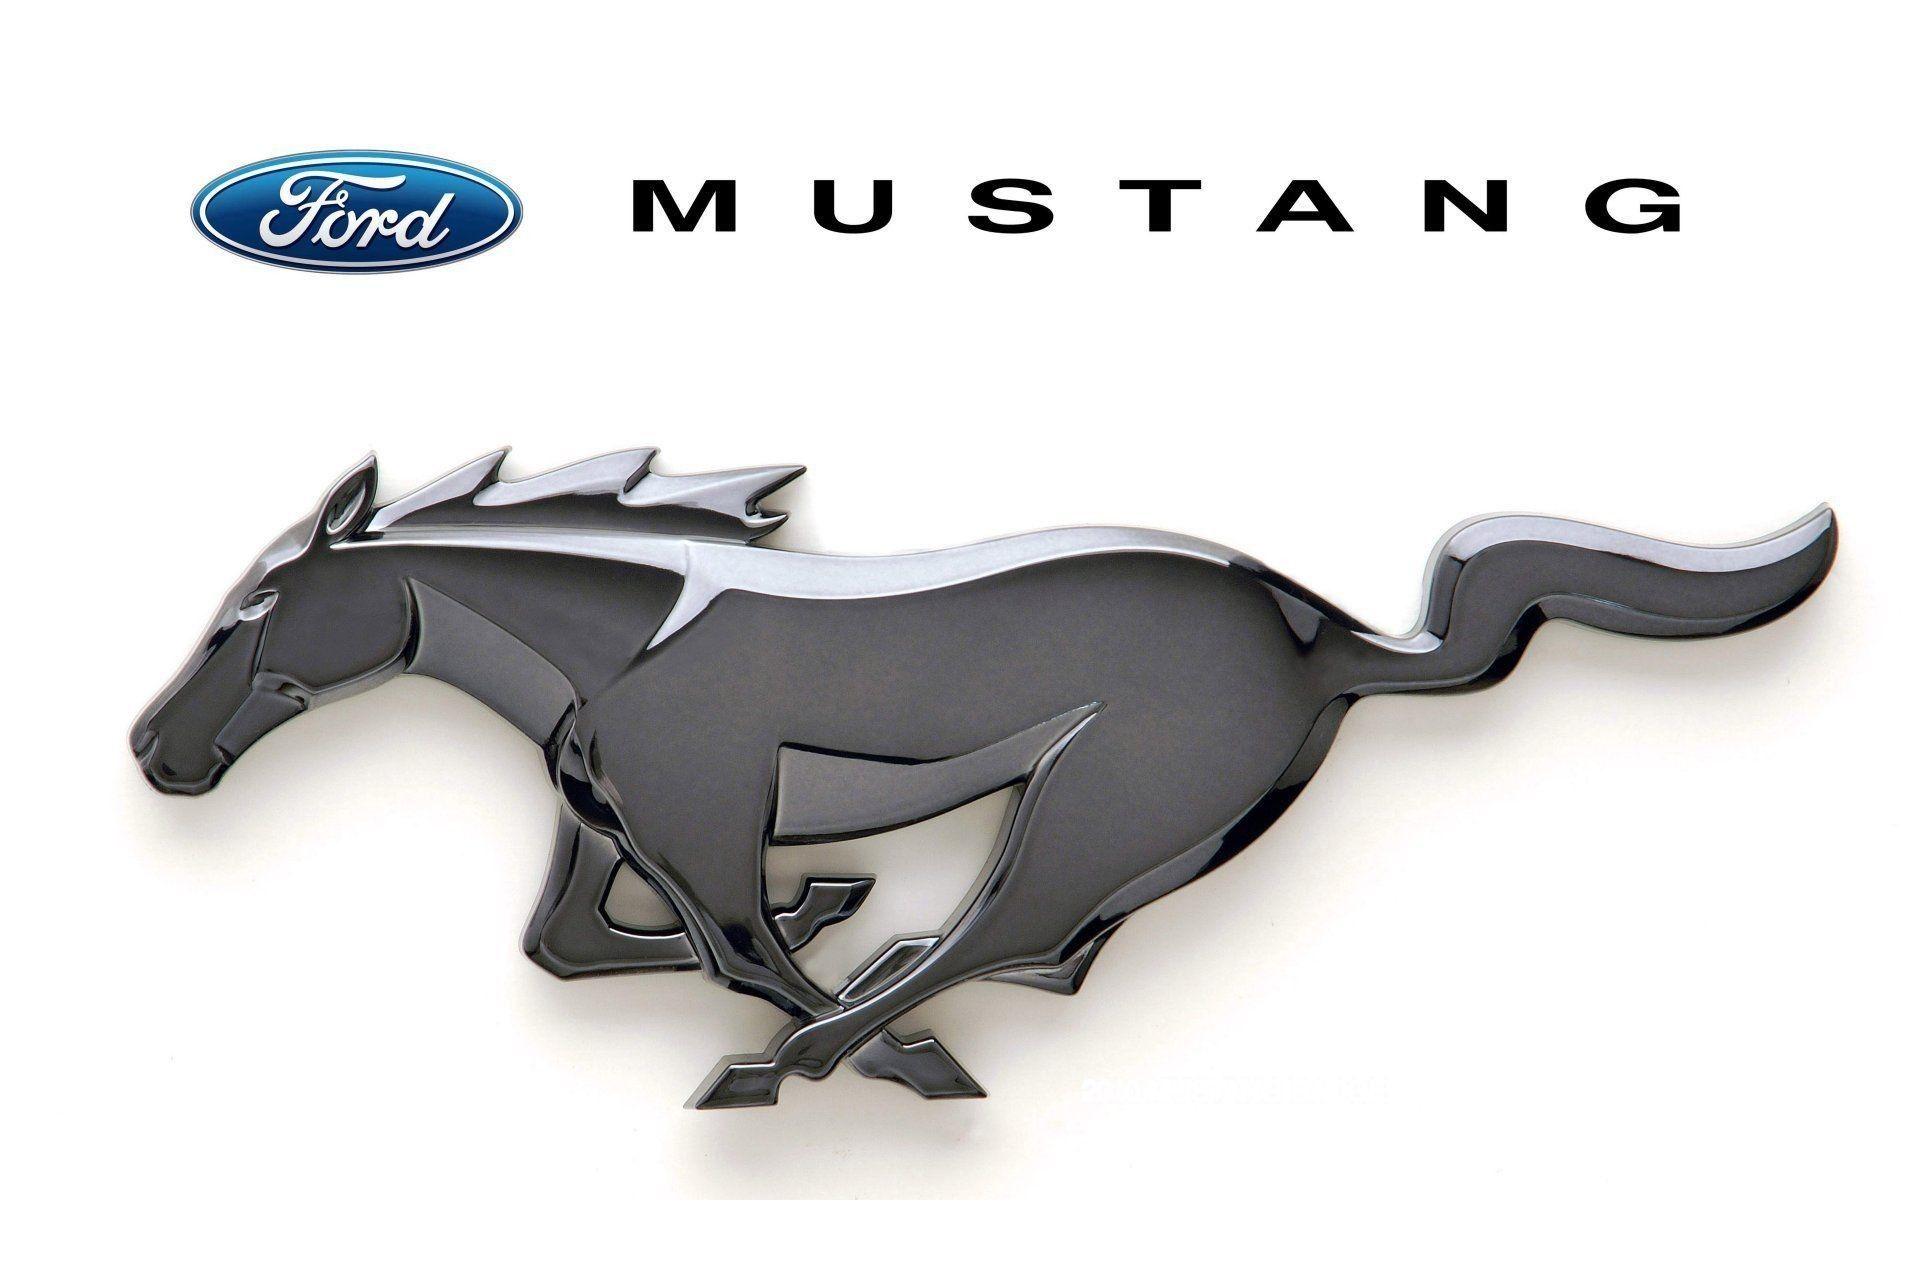 72+] Mustang Logo Wallpaper - WallpaperSafari